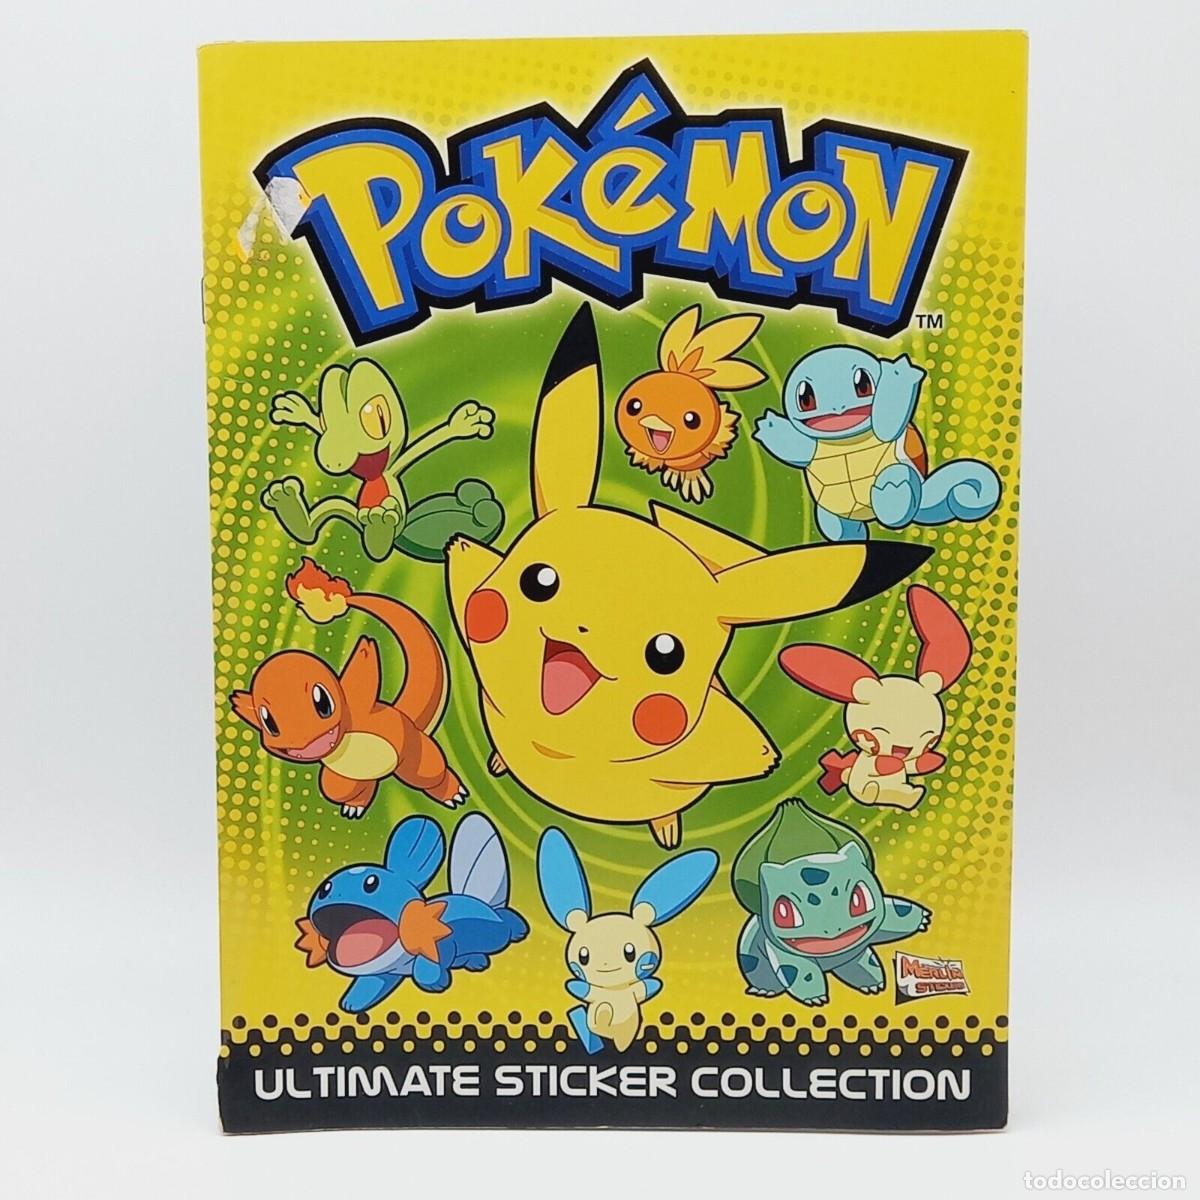 album pokemon ultimate sticker collection topps - Acquista Album antichi  incompleti su todocoleccion